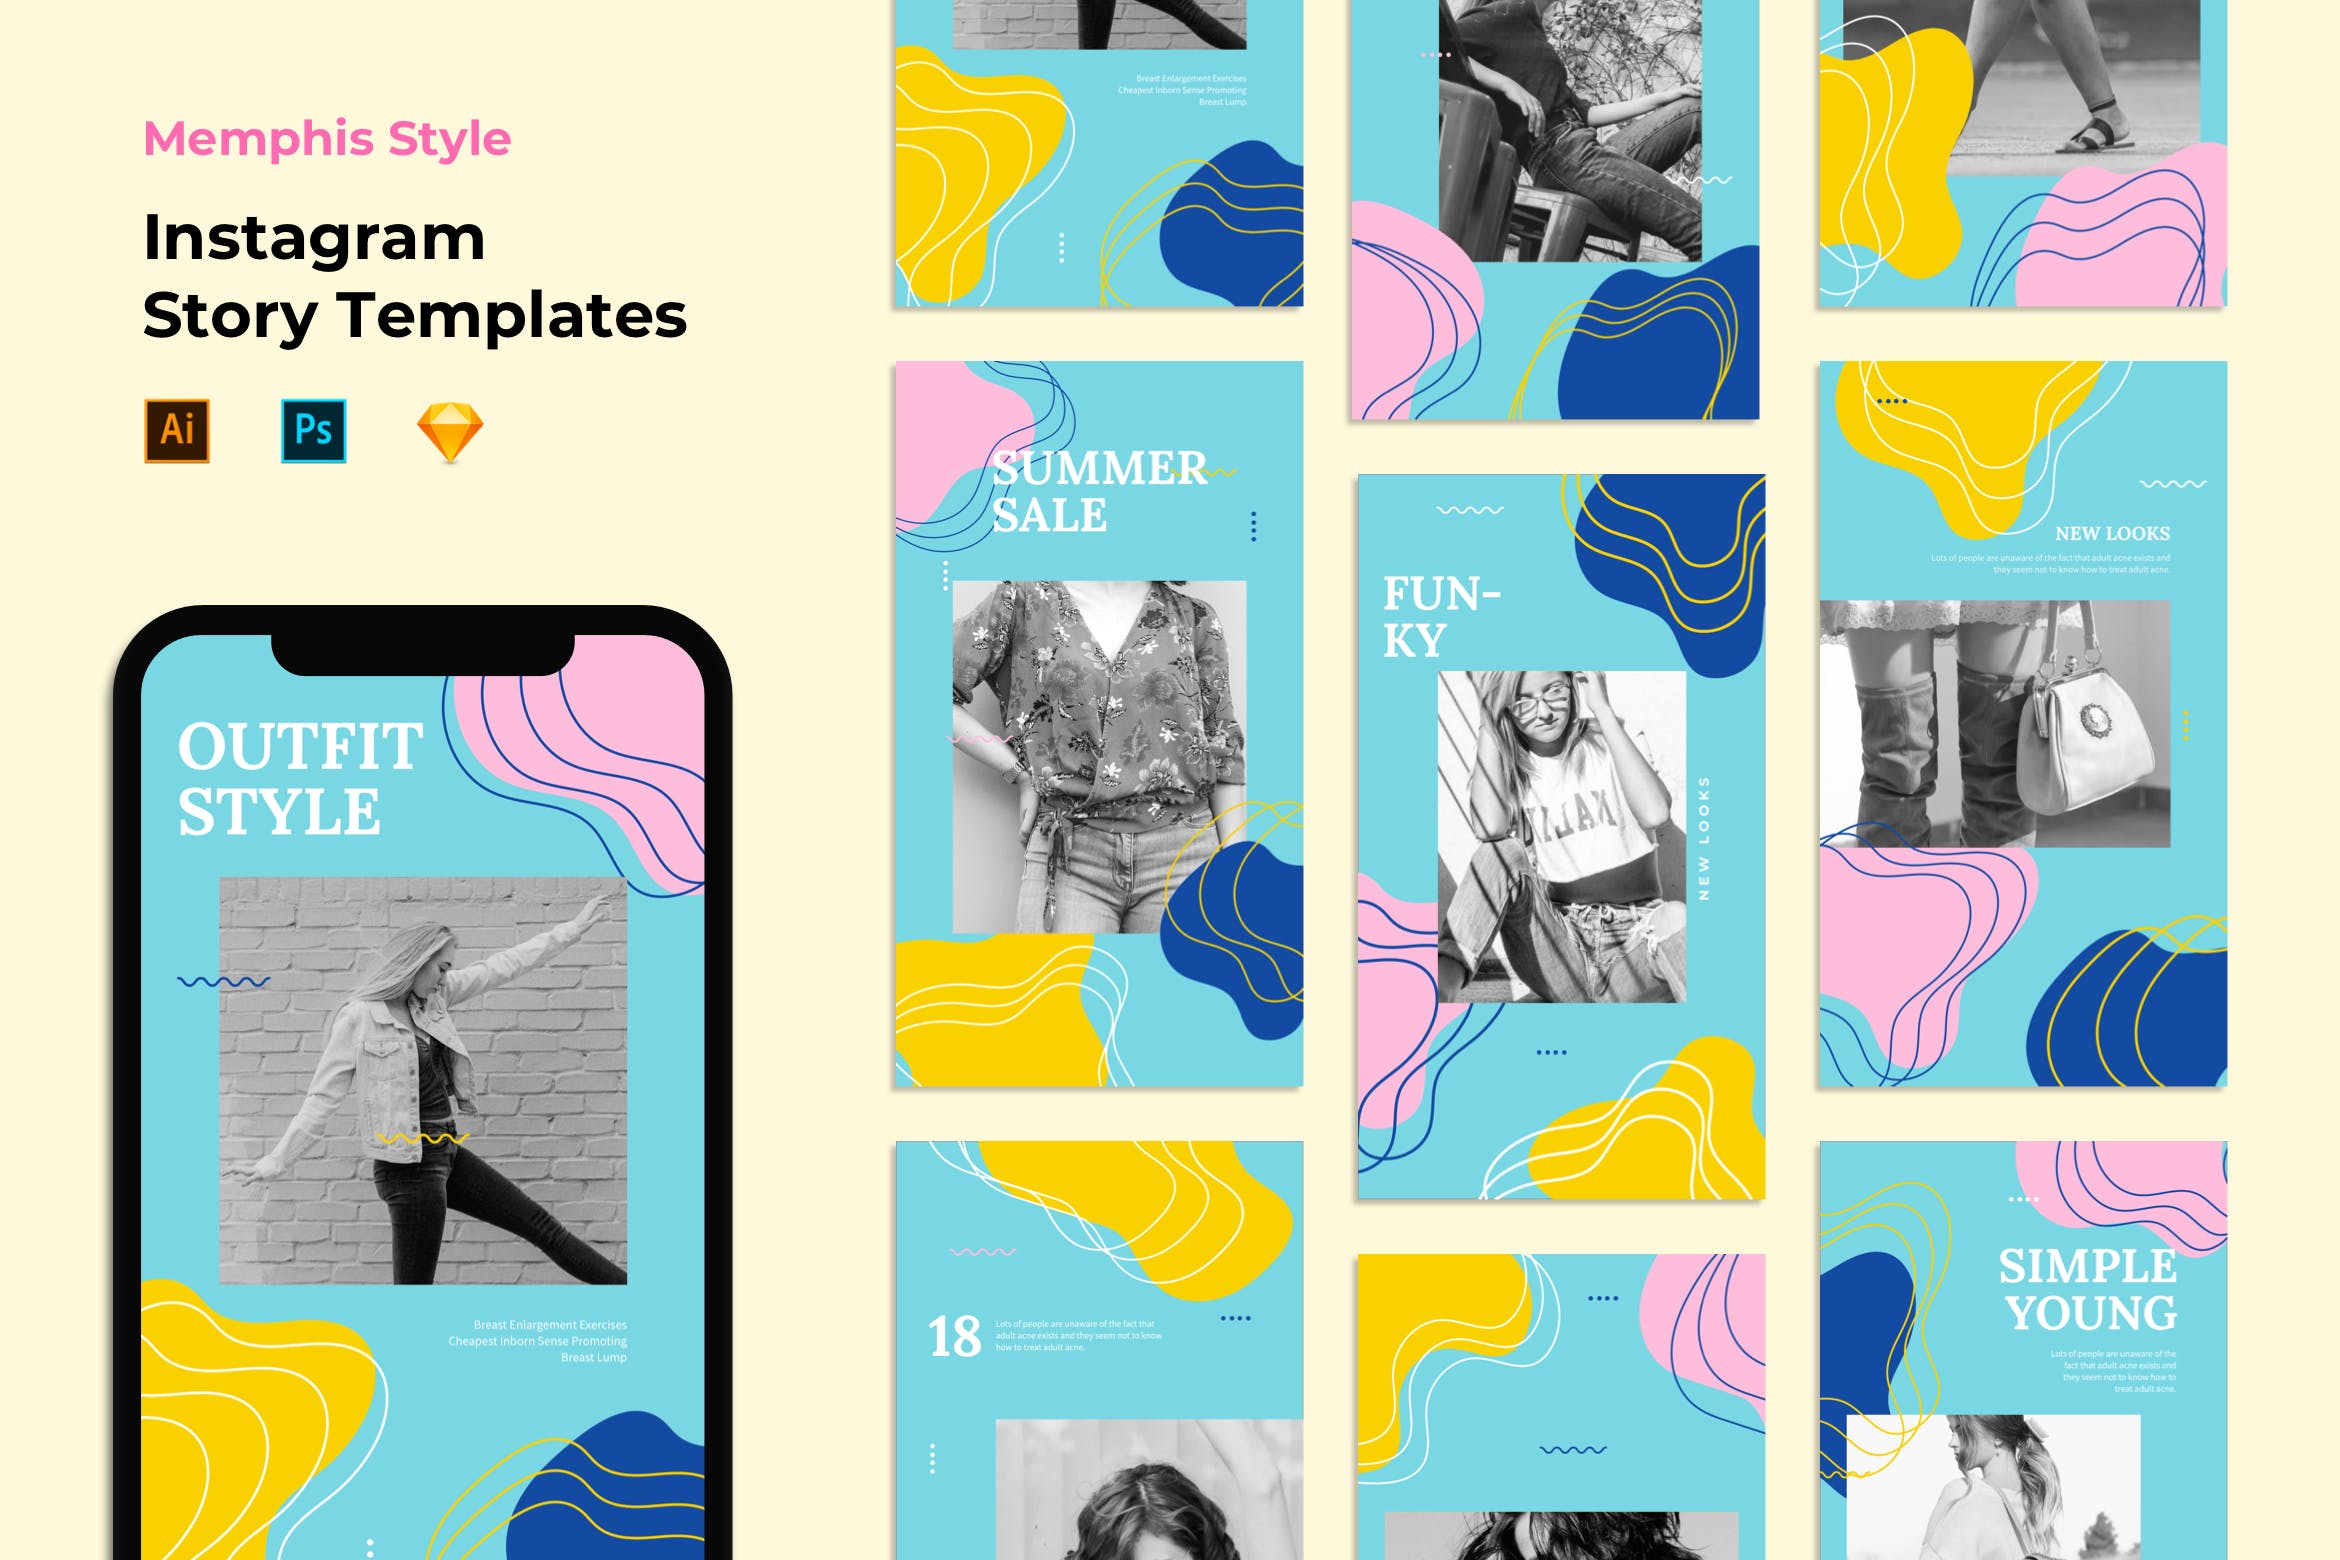 孟菲斯风格Instagram社交品牌故事宣传设计素材 Instagram Story Templates – Memphis Style插图